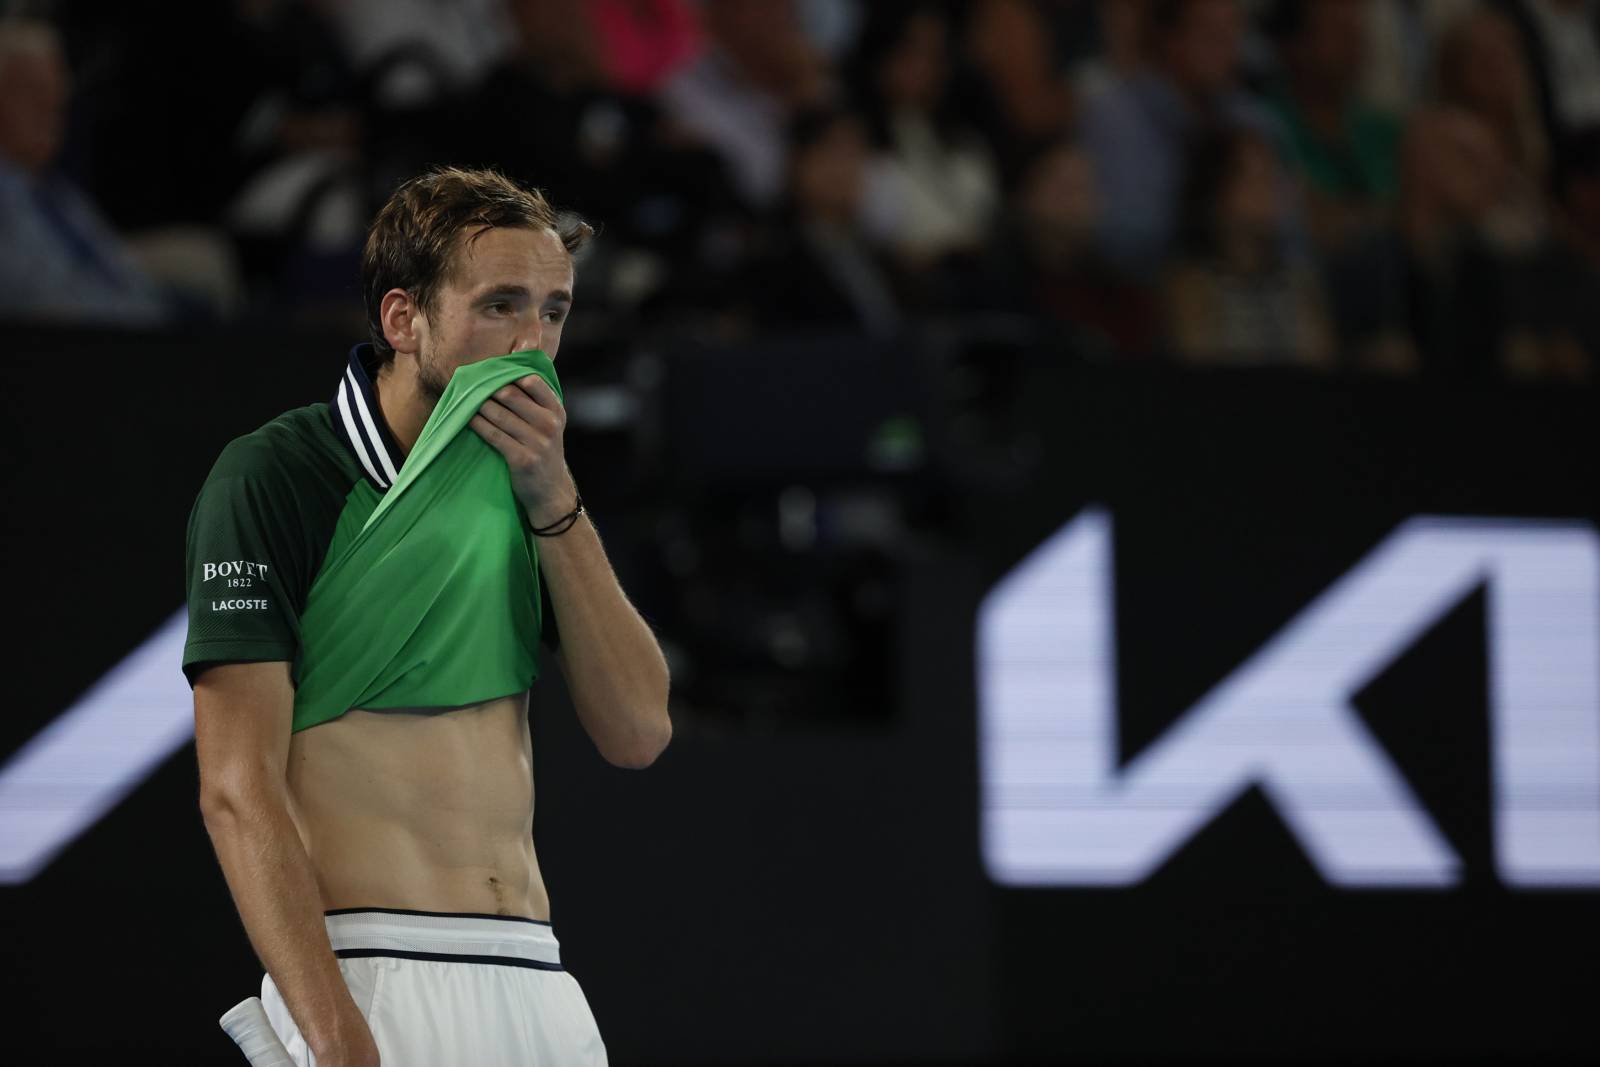 Пивоварова высказалась о поражении Медведева в финале Australian Open